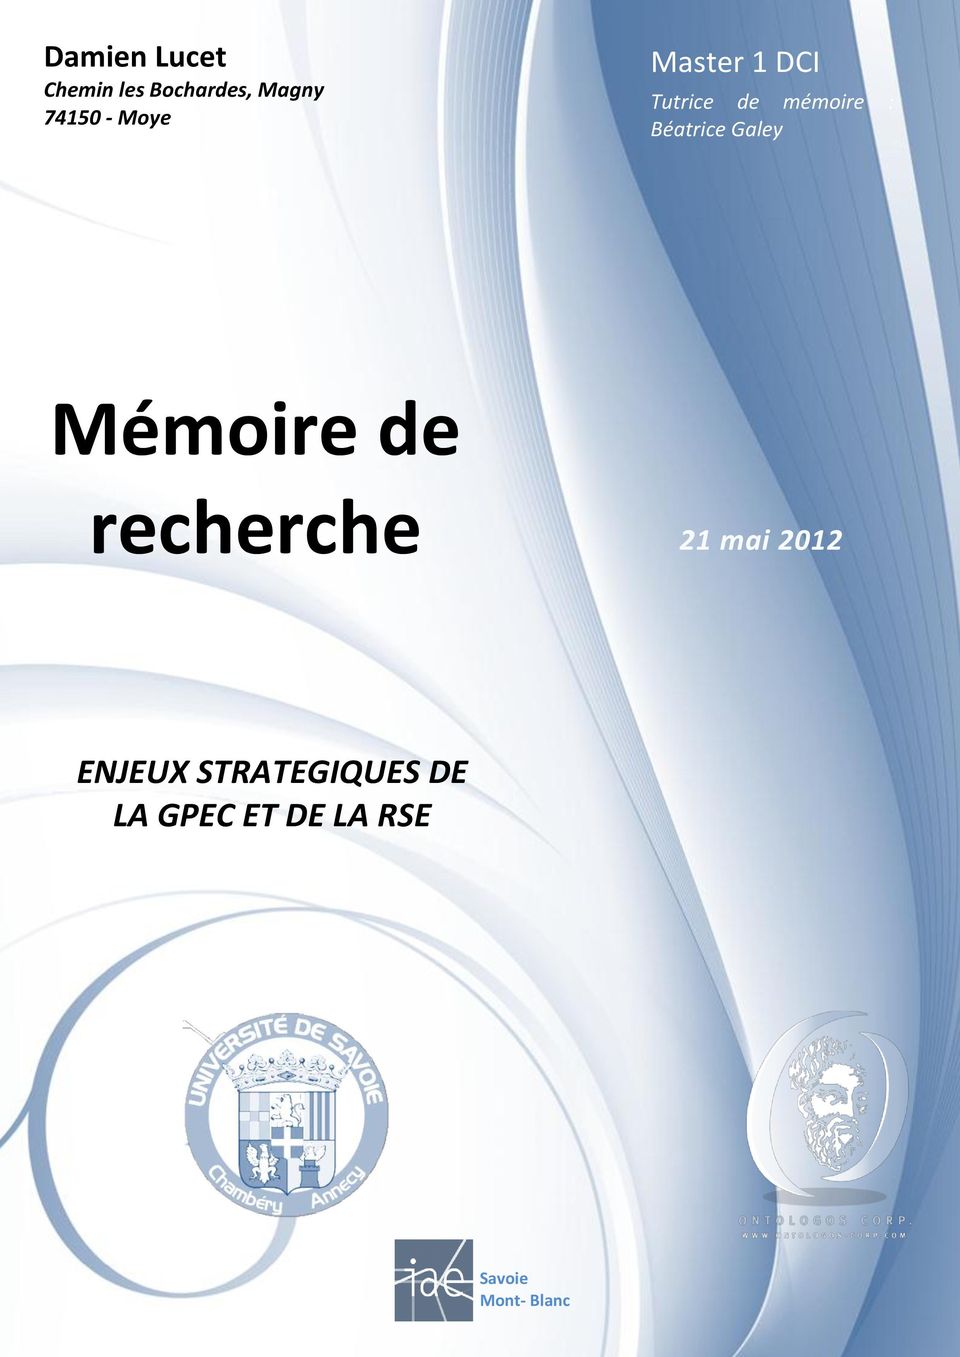 Galey Mémoire de recherche 21 mai 2012 ENJEUX